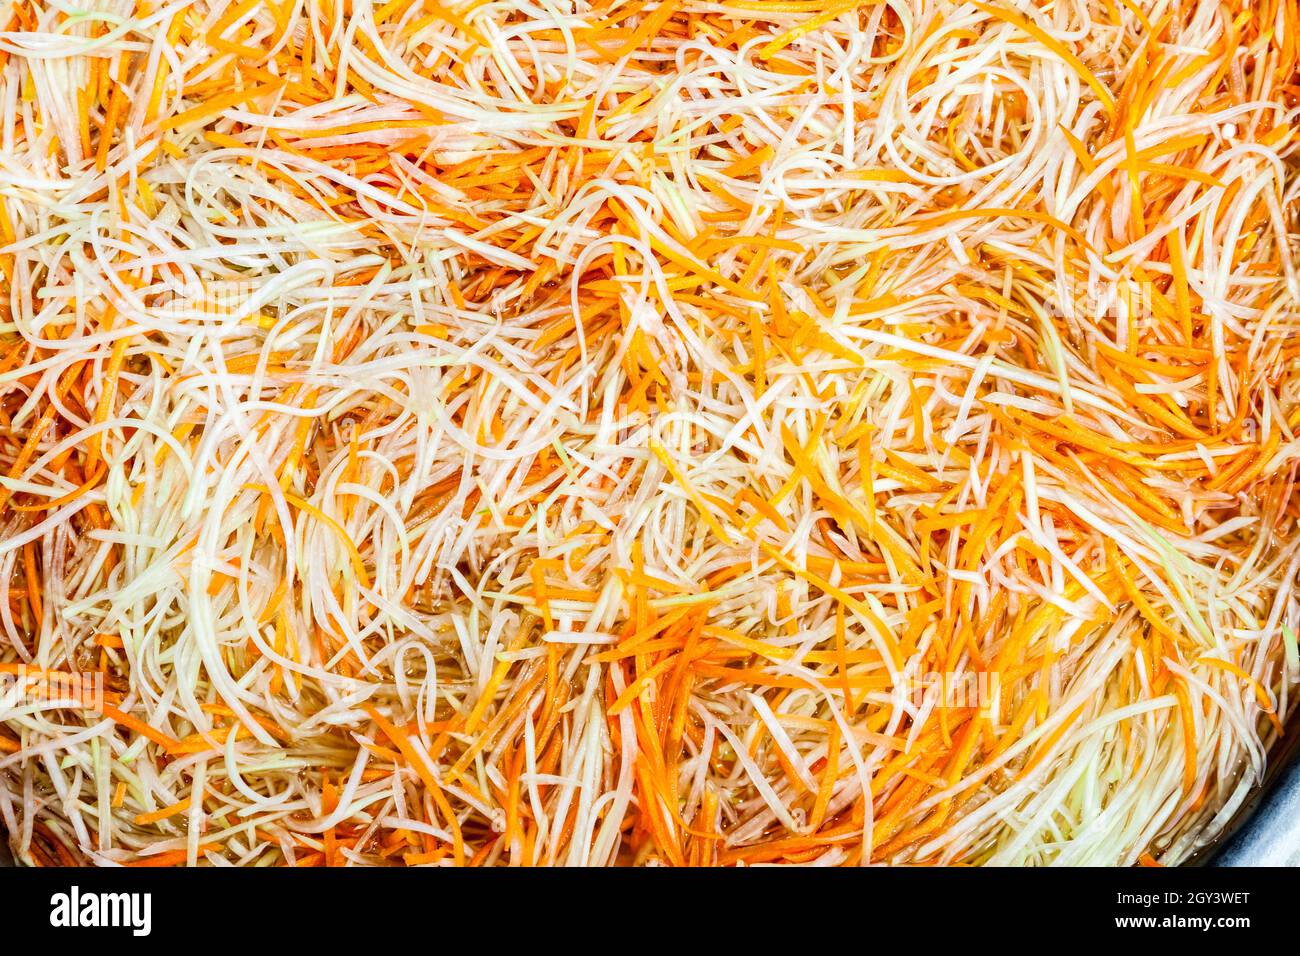 carota grattugiata e rapa nel mercato asiatico Foto Stock